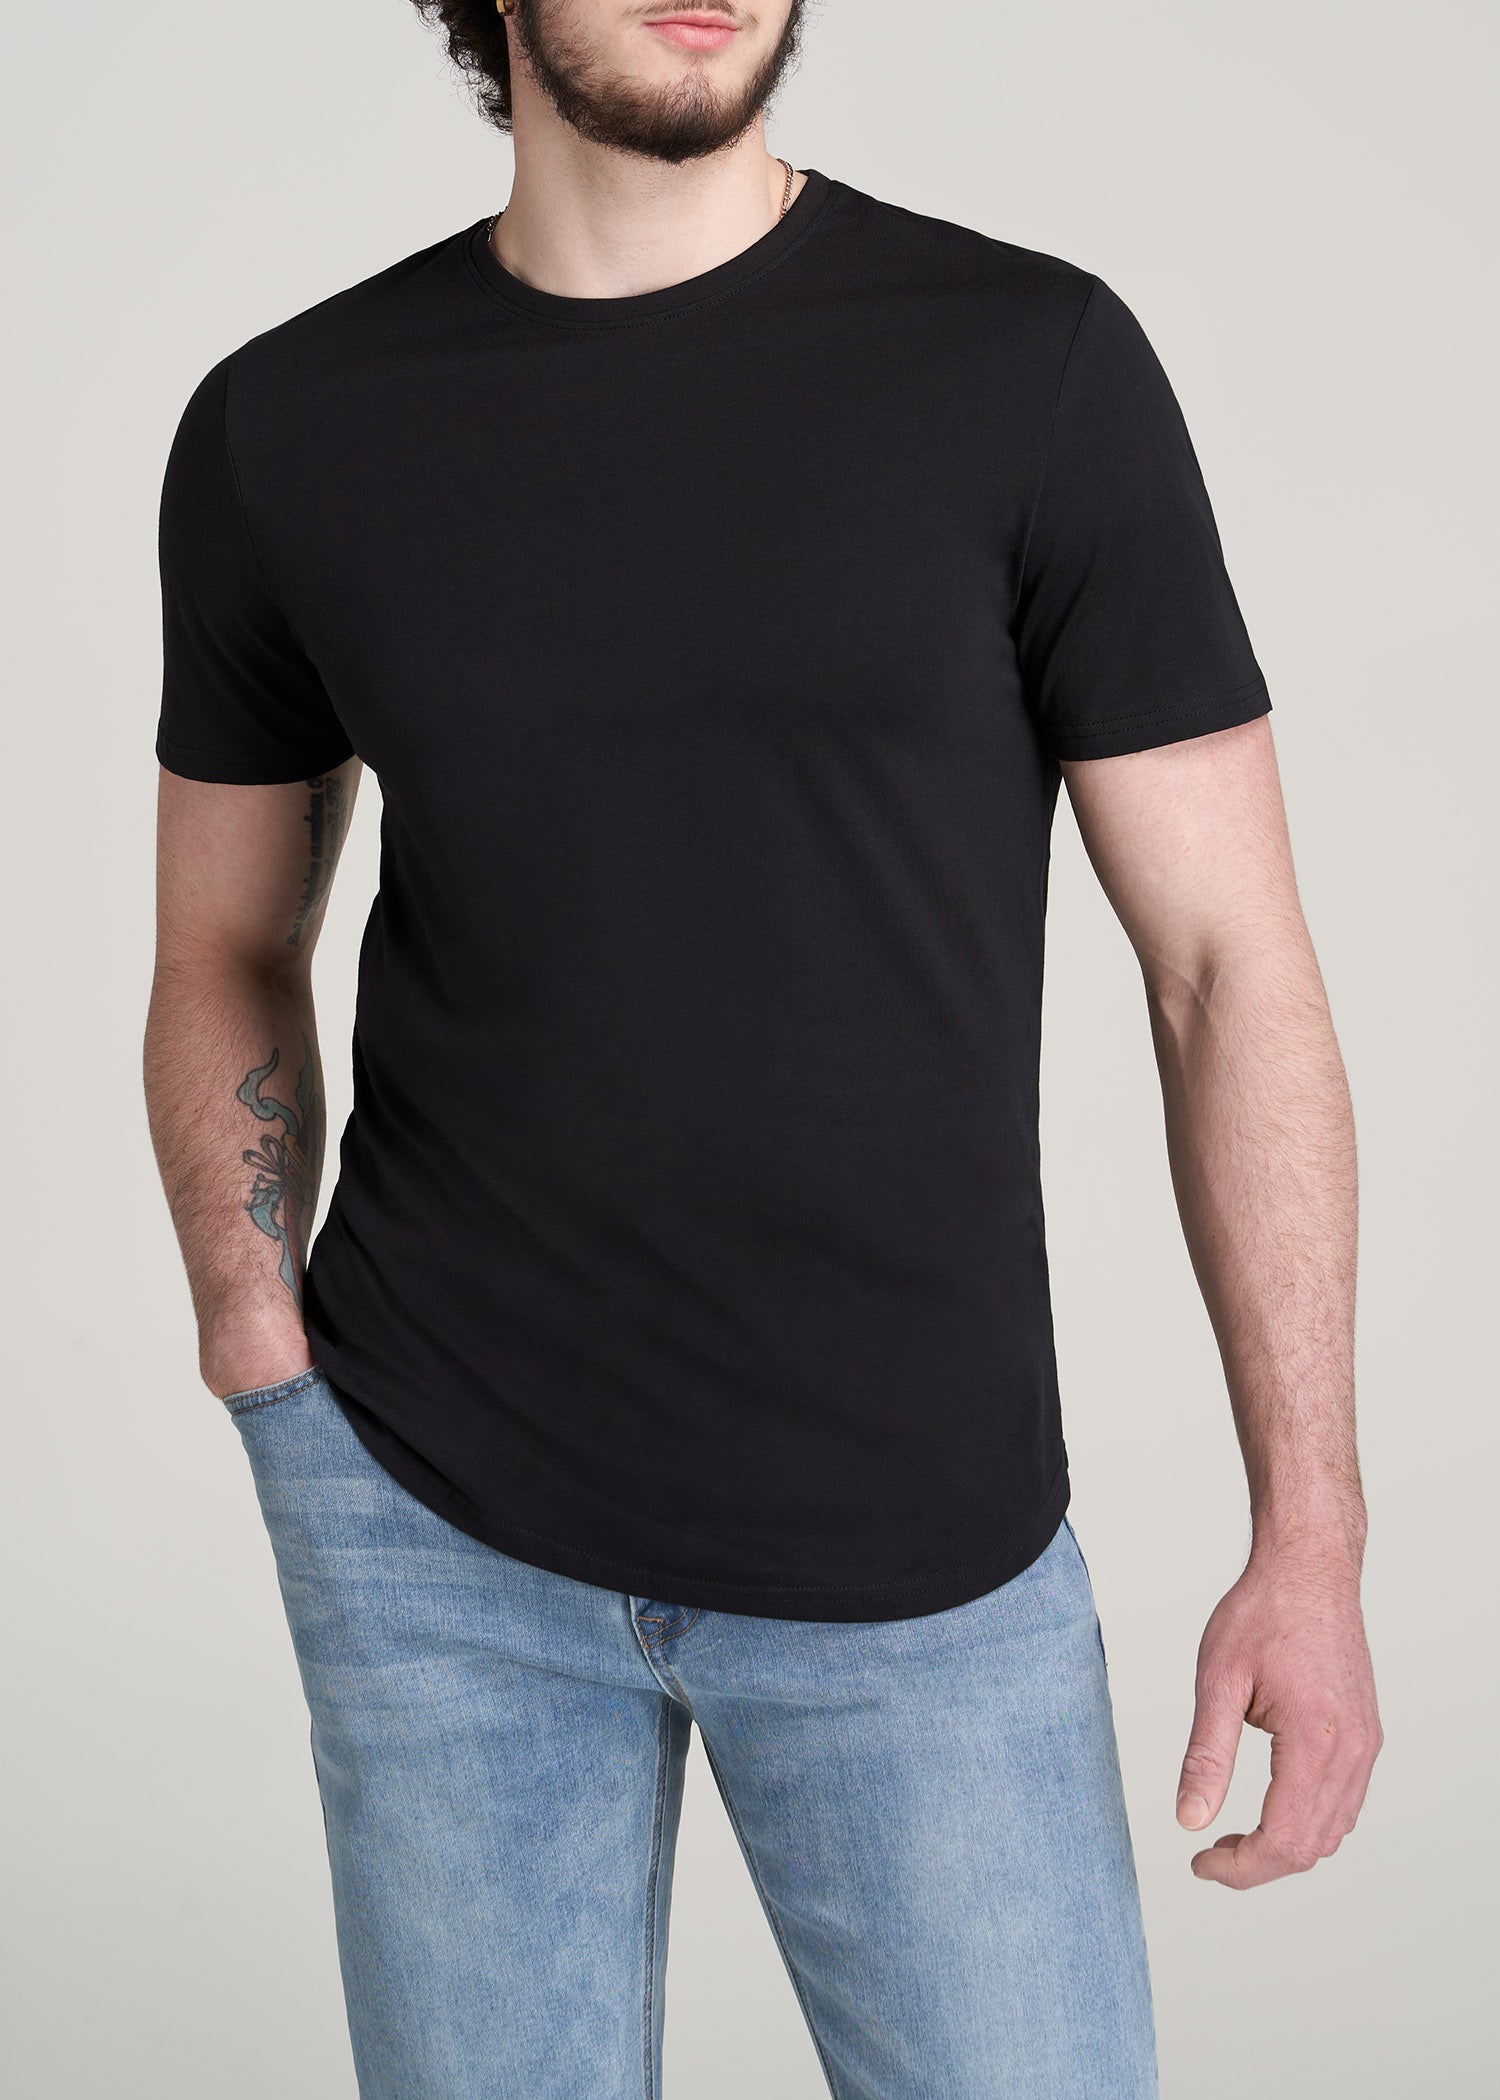 Men's what is black t-shirt